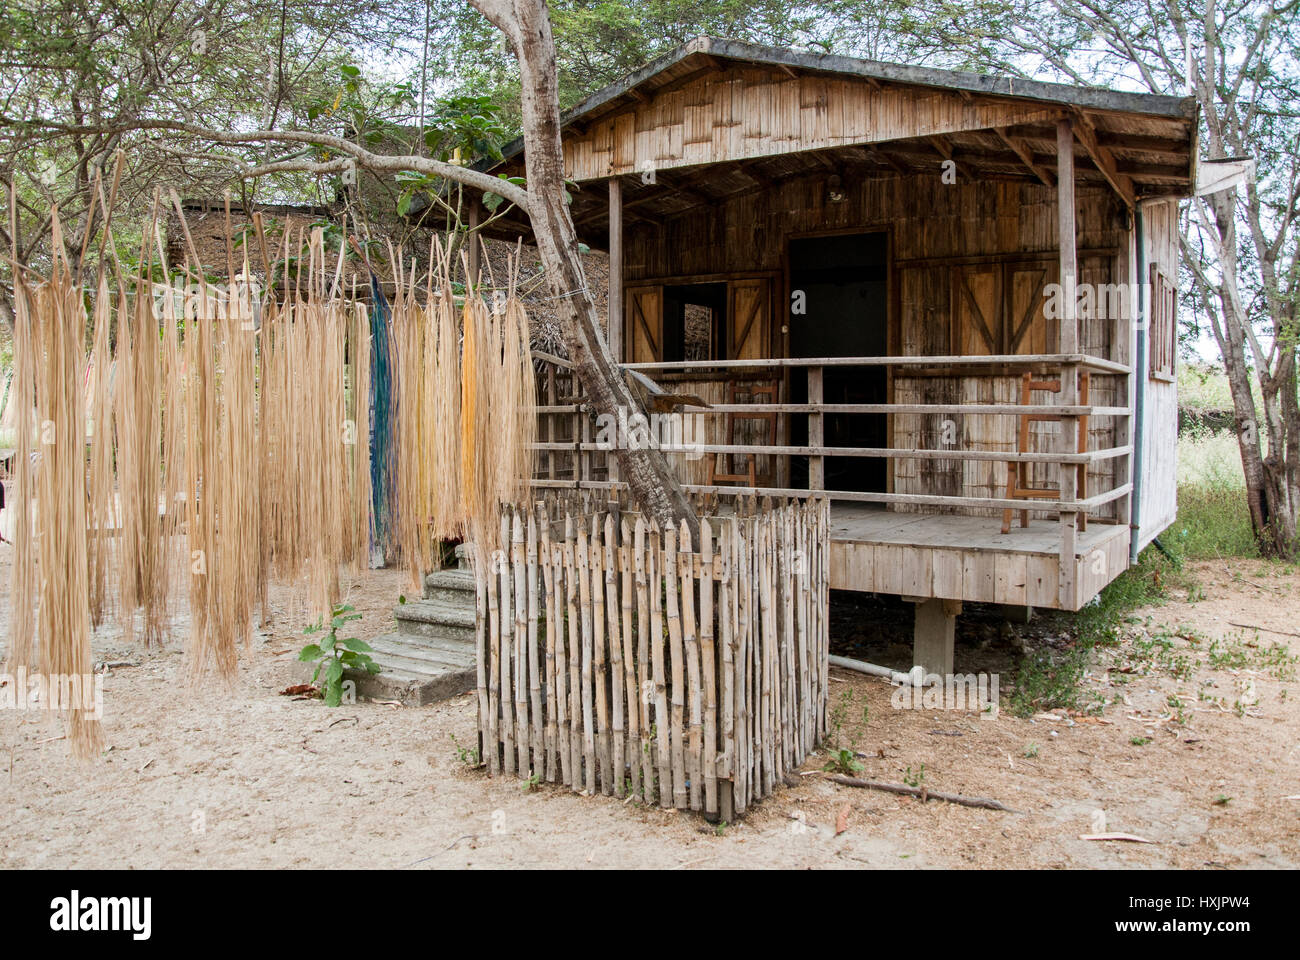 Maison traditionnelle en bois dans une usine de chapeaux - Manta - Equateur  Photo Stock - Alamy